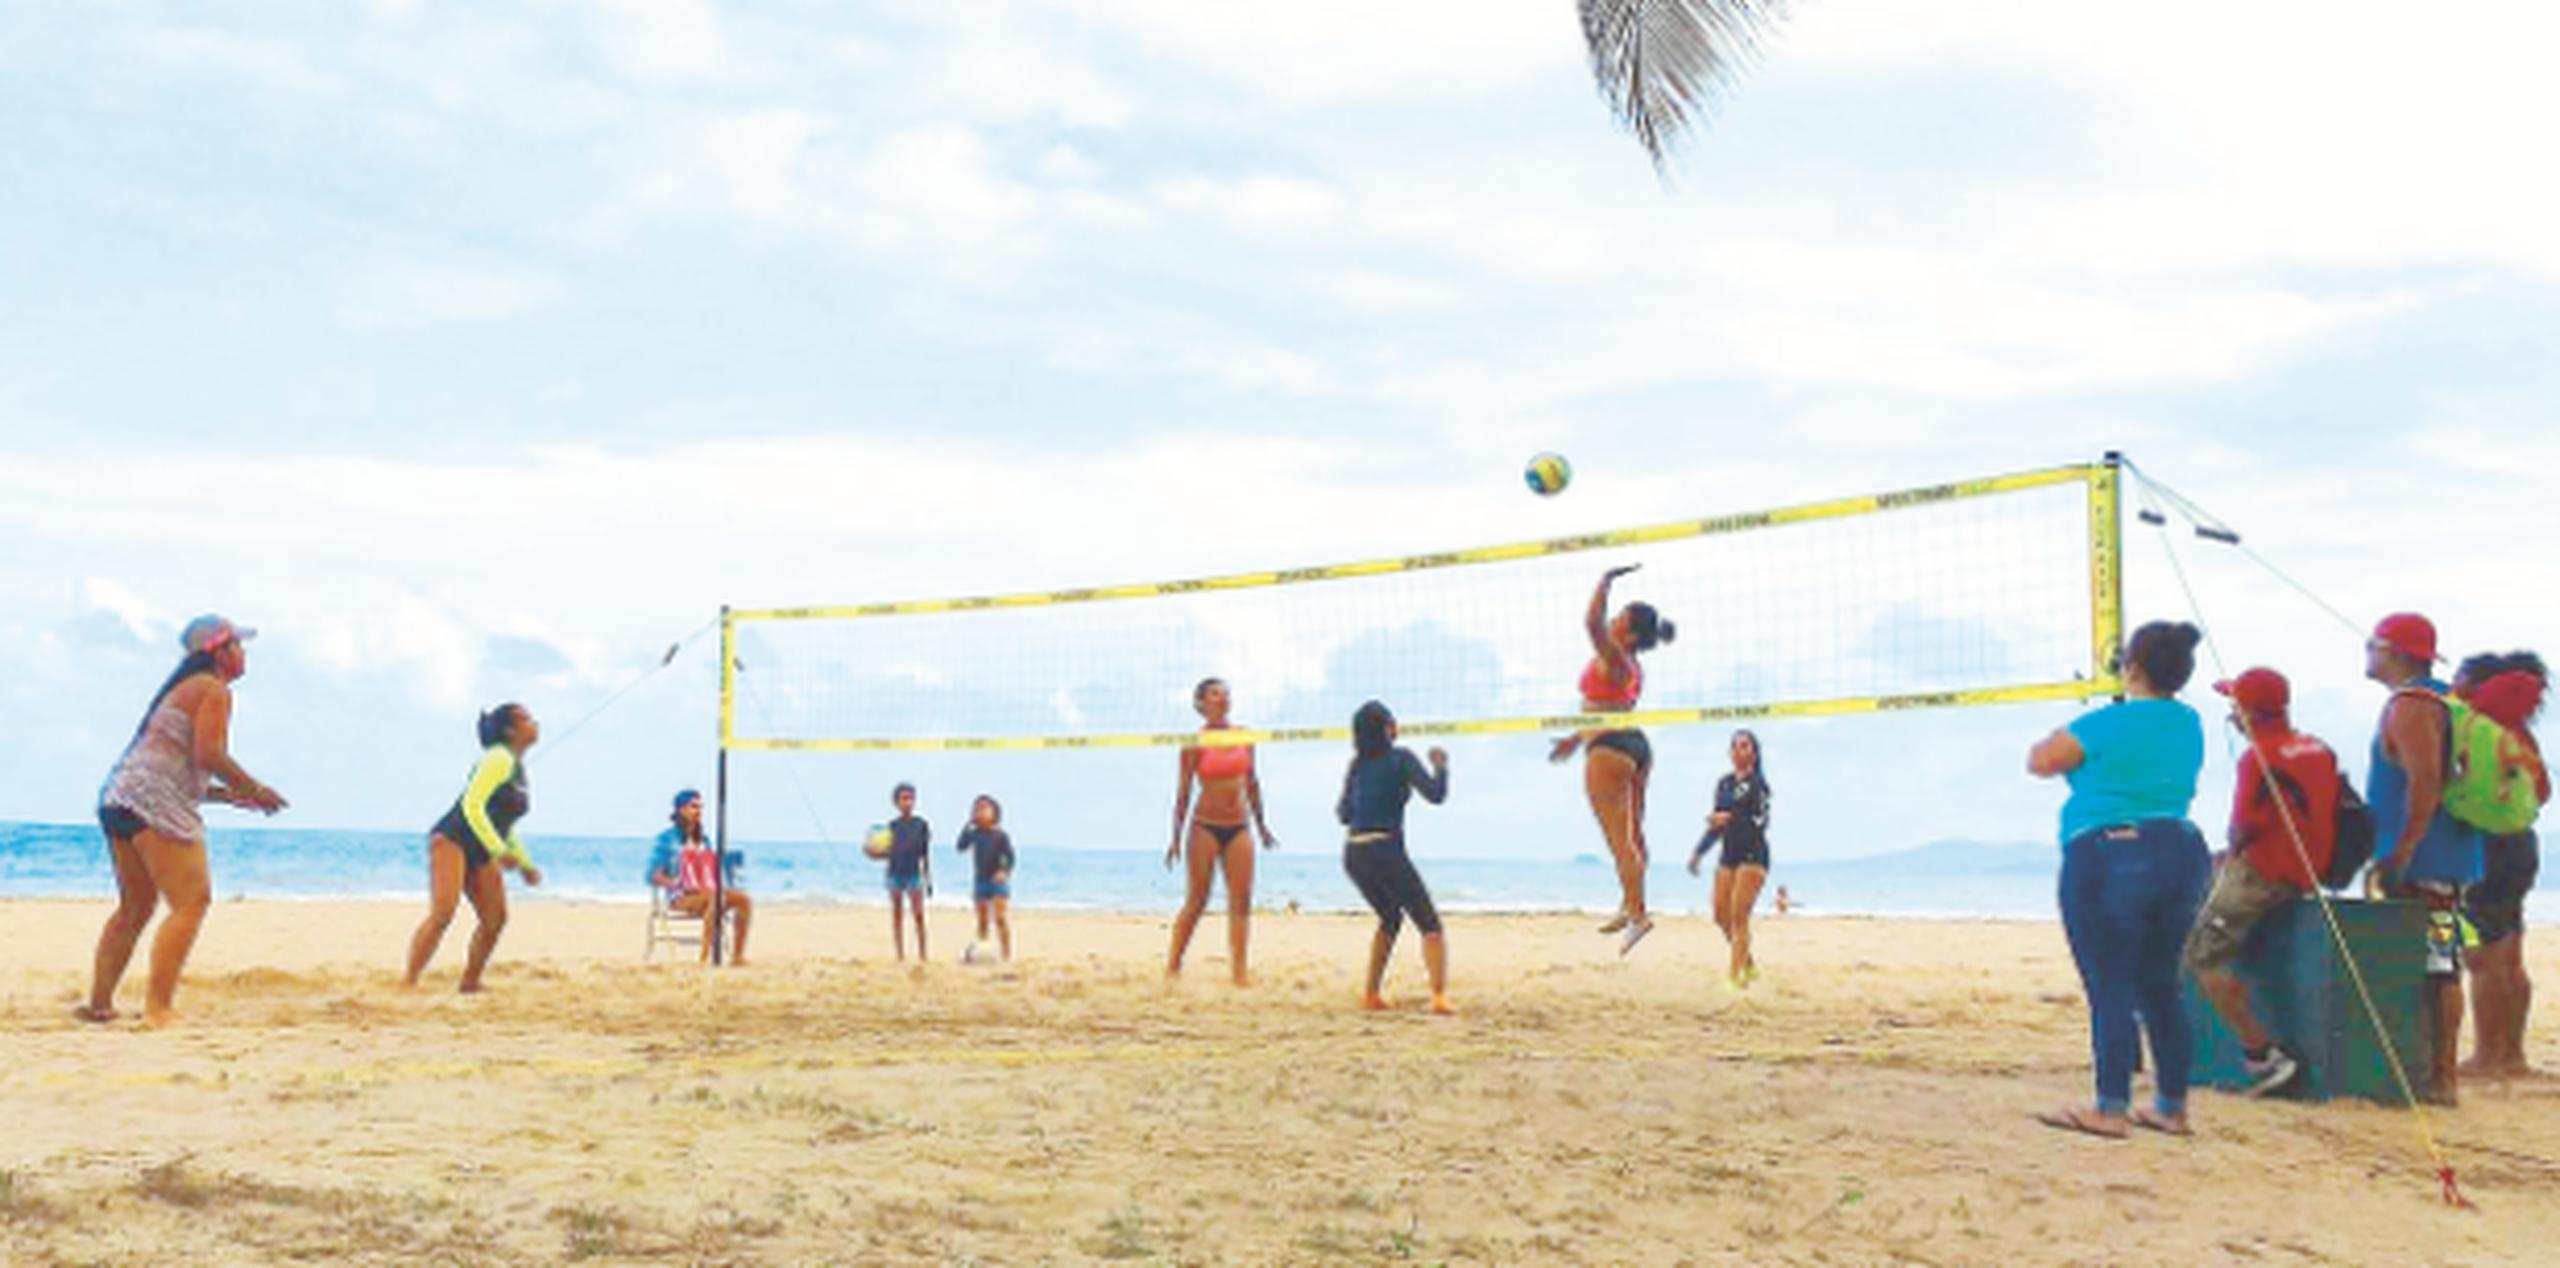 El Torneo de Voleibol se celebra hace 15 años en el Balneario de Punta Santiago en Humacao. (Suministrada)